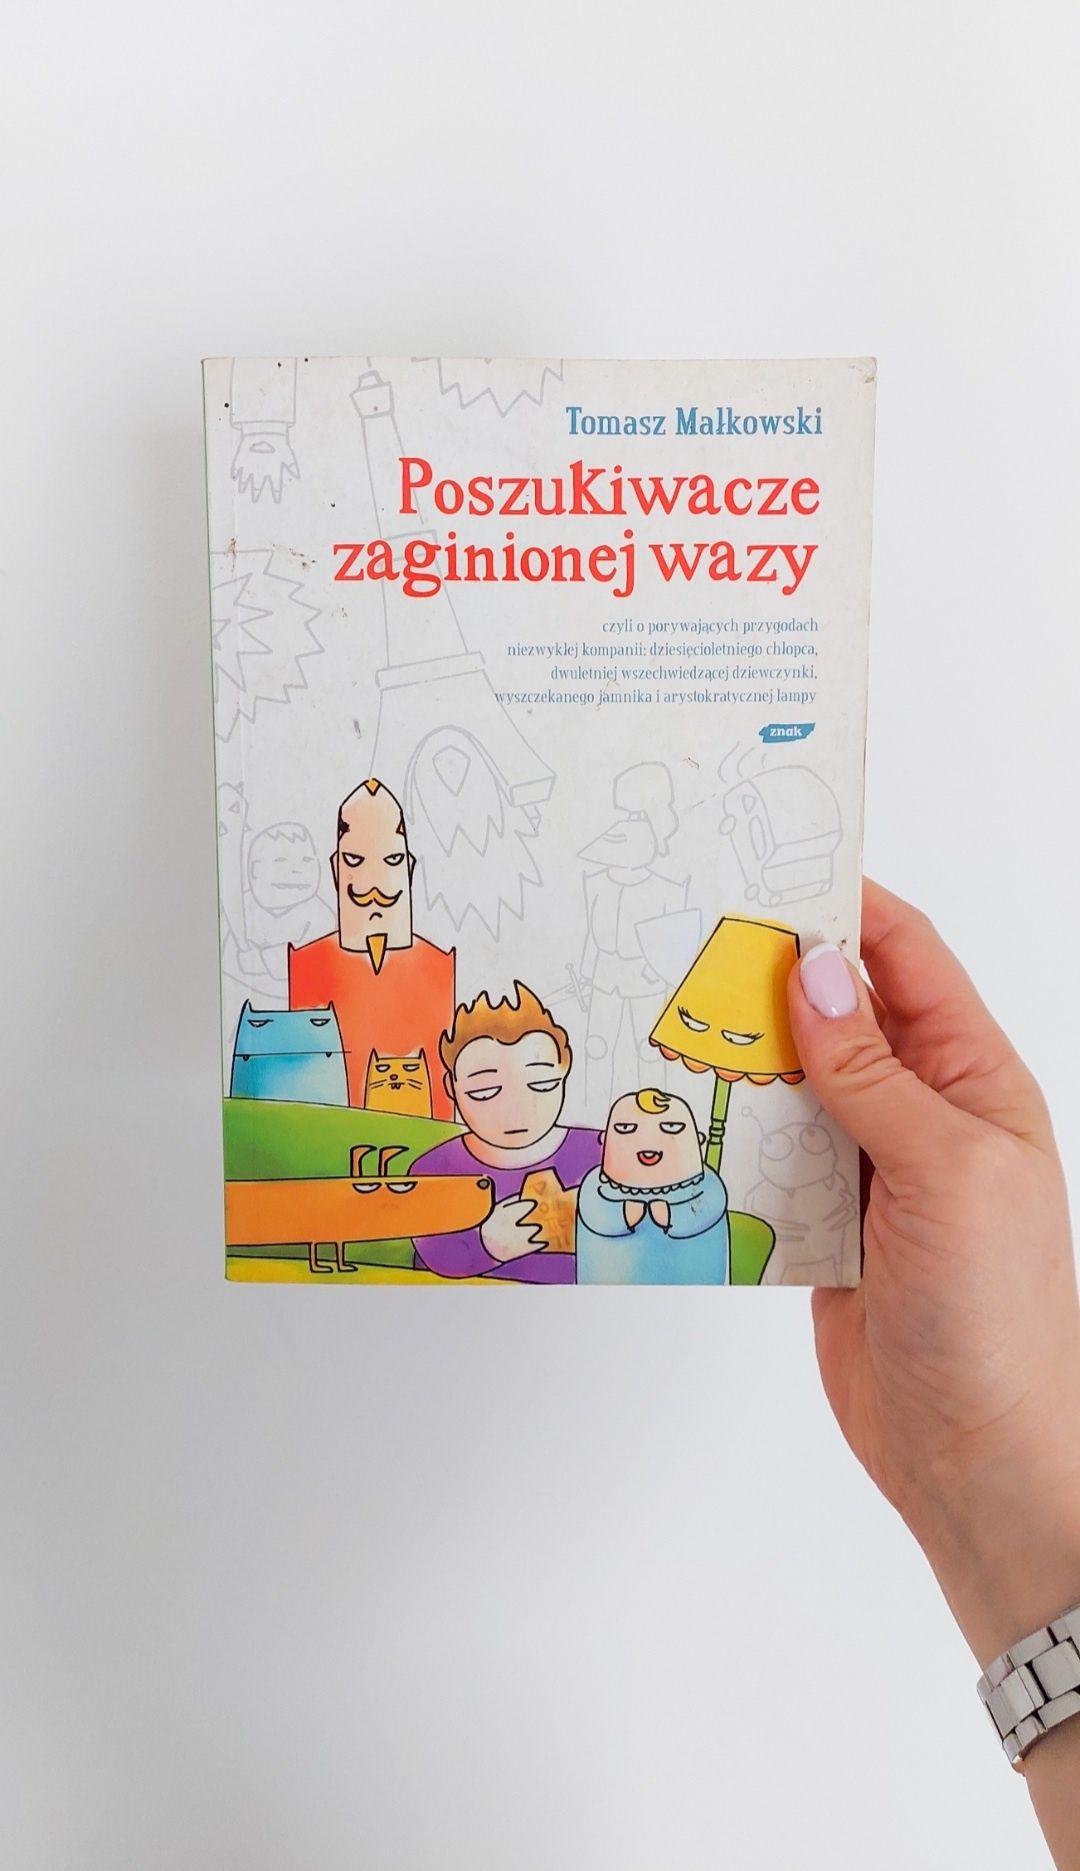 Książka Tomasz Małkowski Poszukiwacze zaginionej wazy